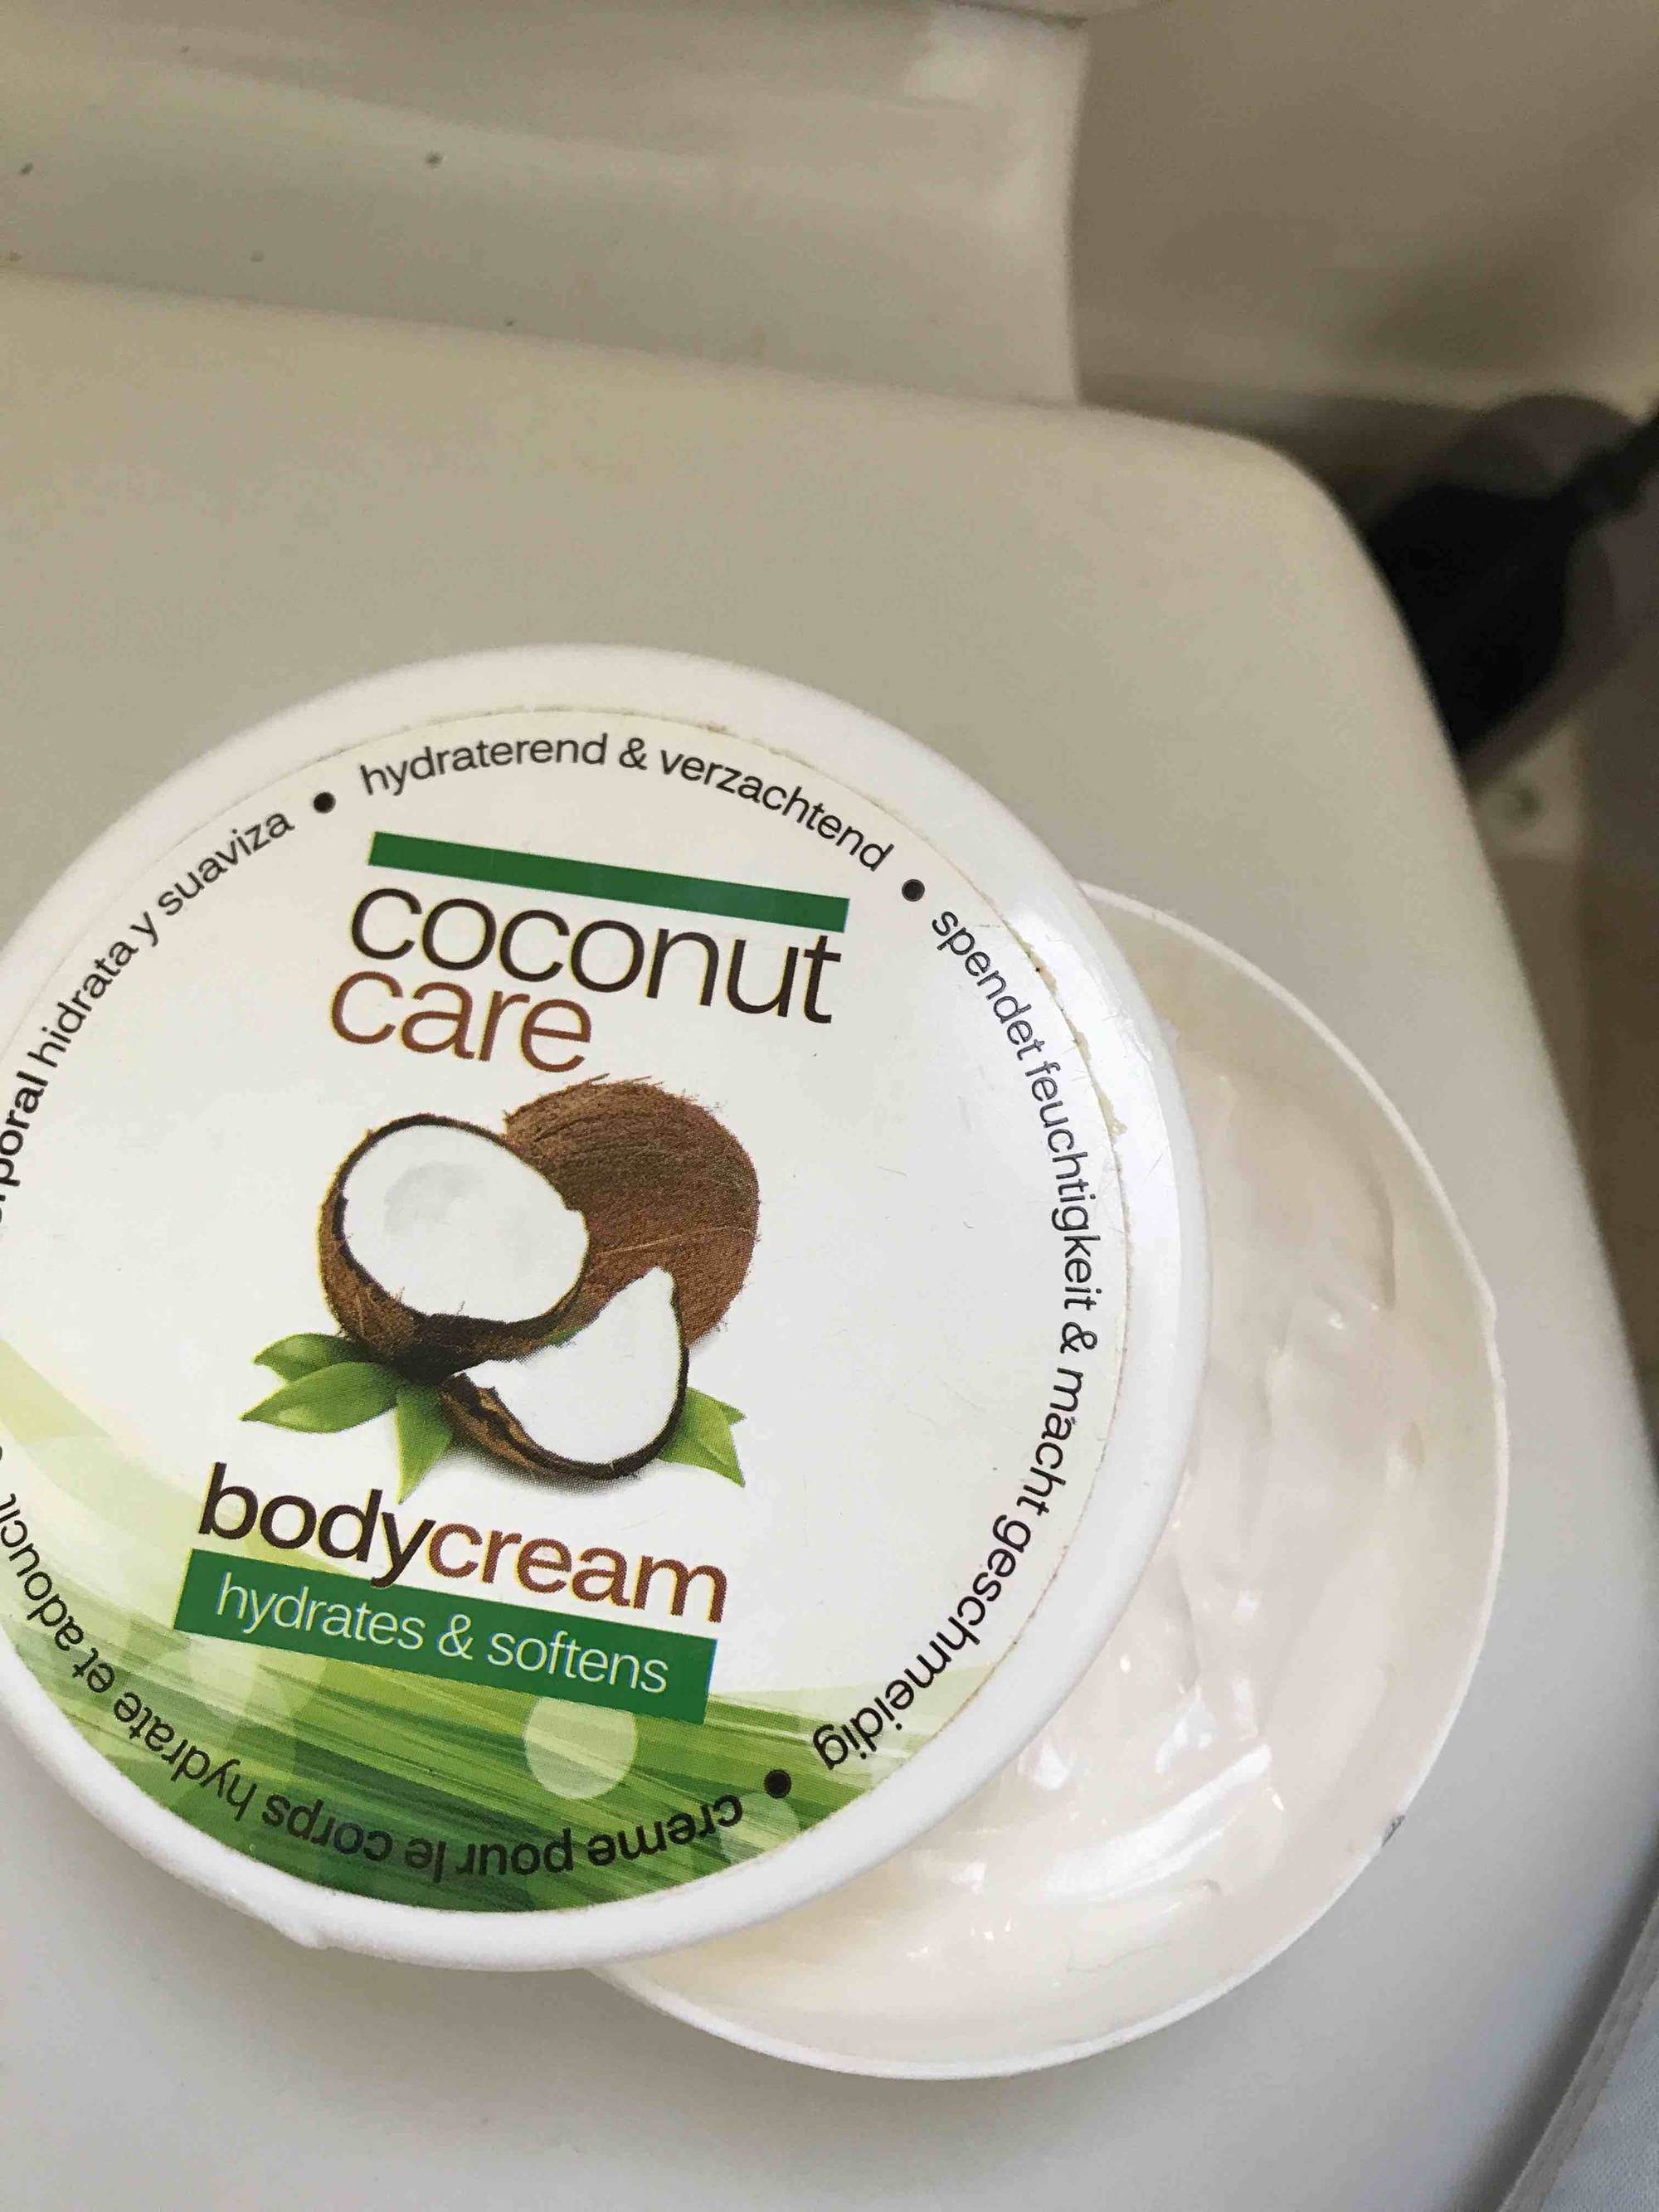 MAXBRANDS - Coconut care - Body cream